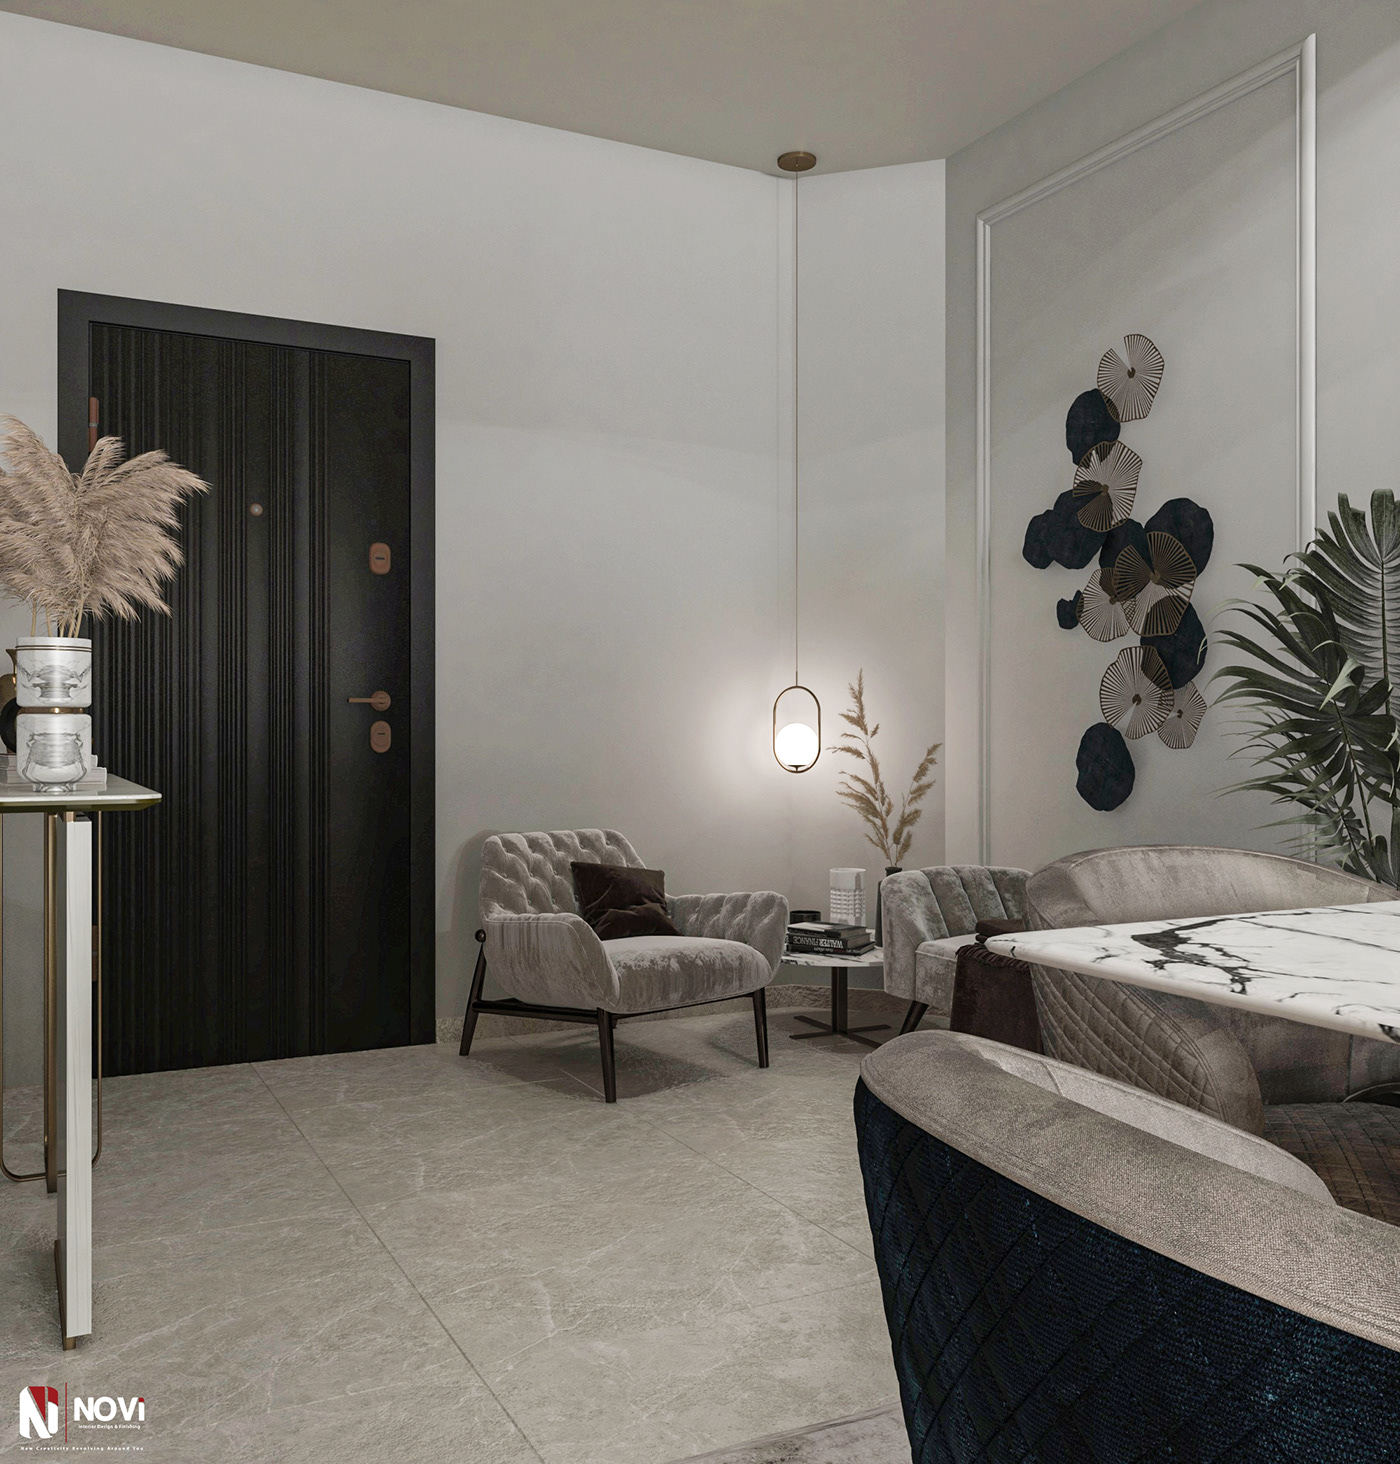 3ds max architectural design home decor homestyle Interior interior design  interiors visualization vray